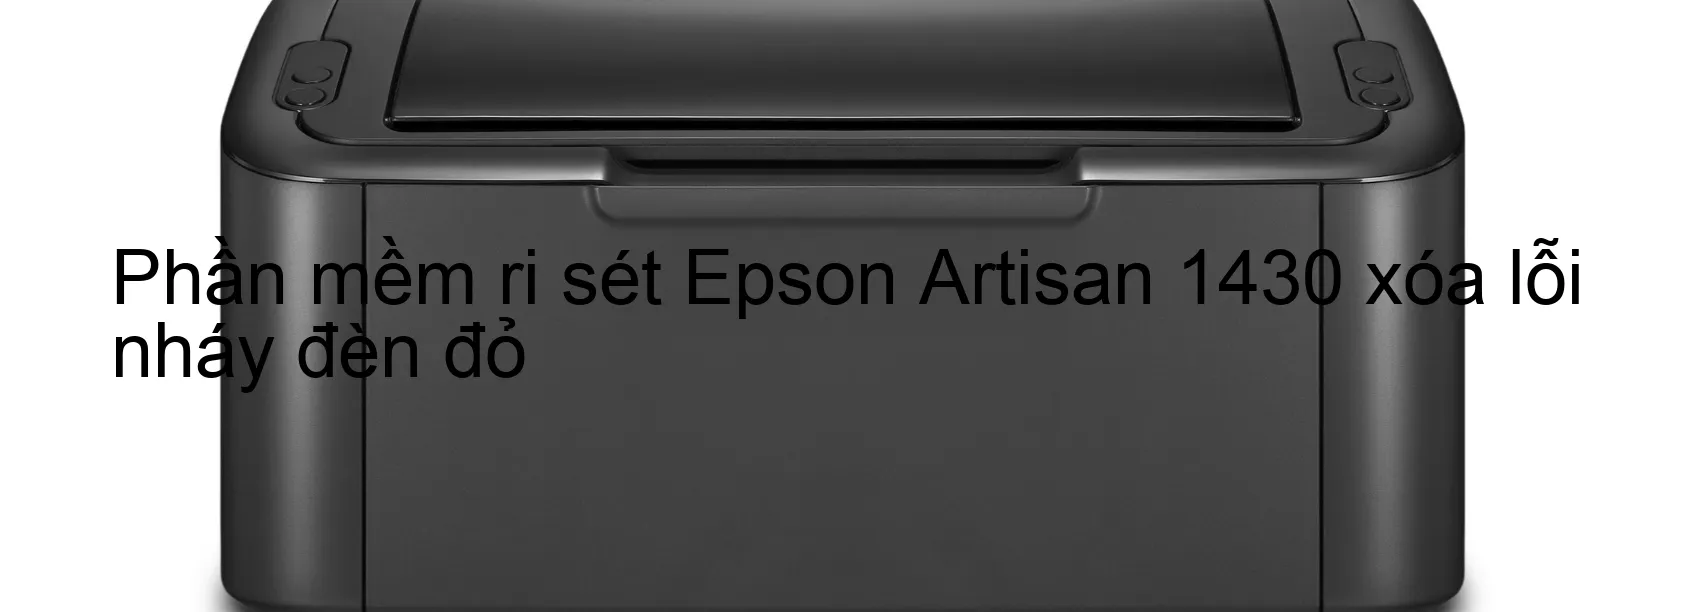 Phần mềm reset Epson Artisan 1430 xóa lỗi nháy đèn đỏ